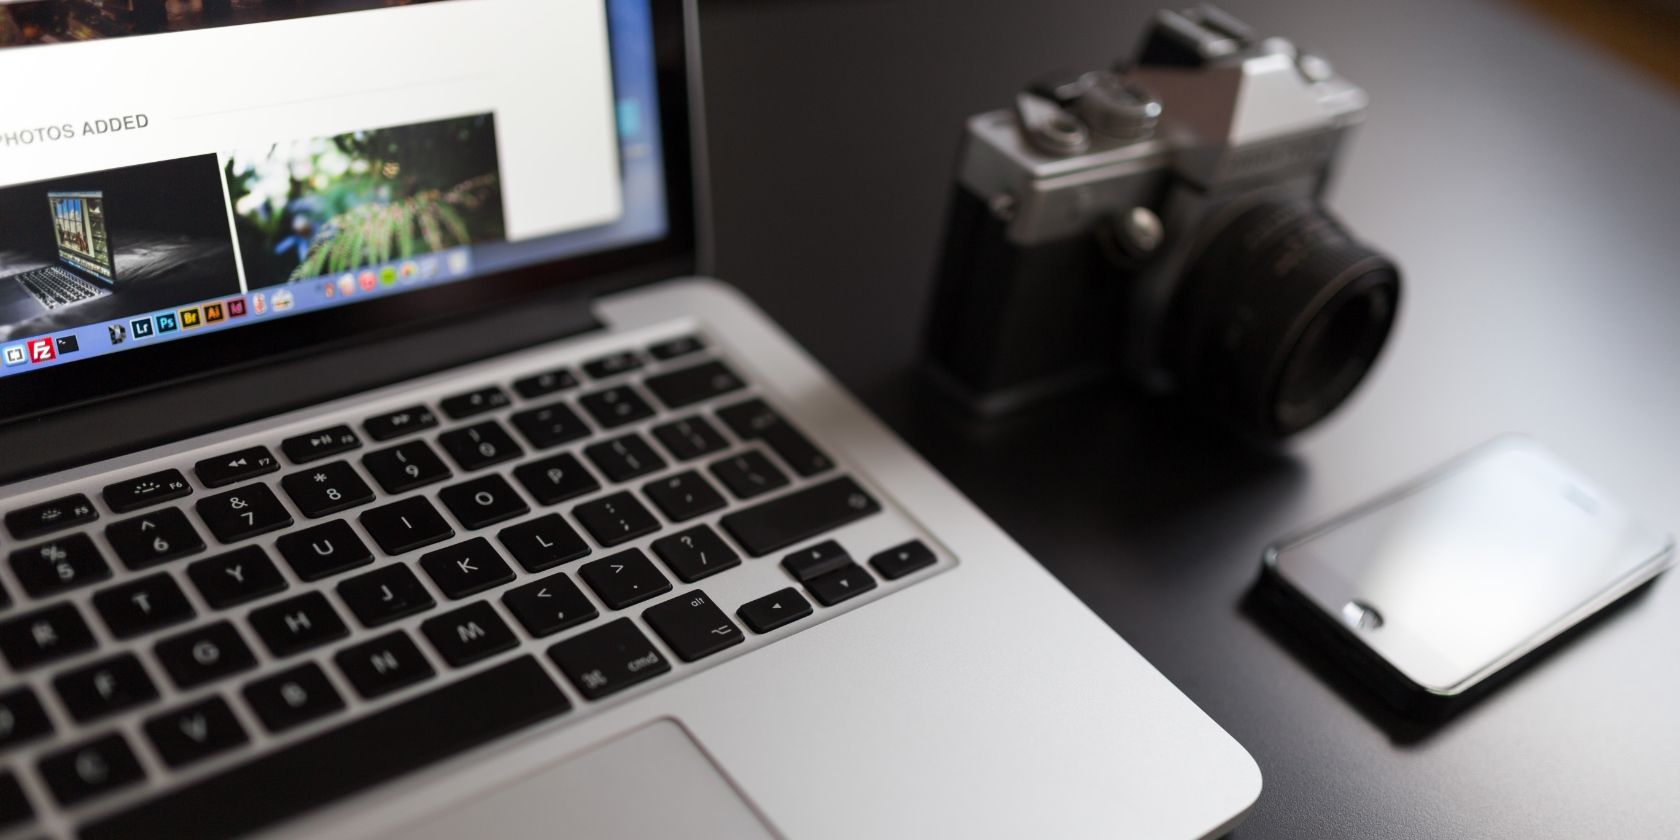 MacBook next to camera and iPhone - Come ritagliare un’immagine su Mac